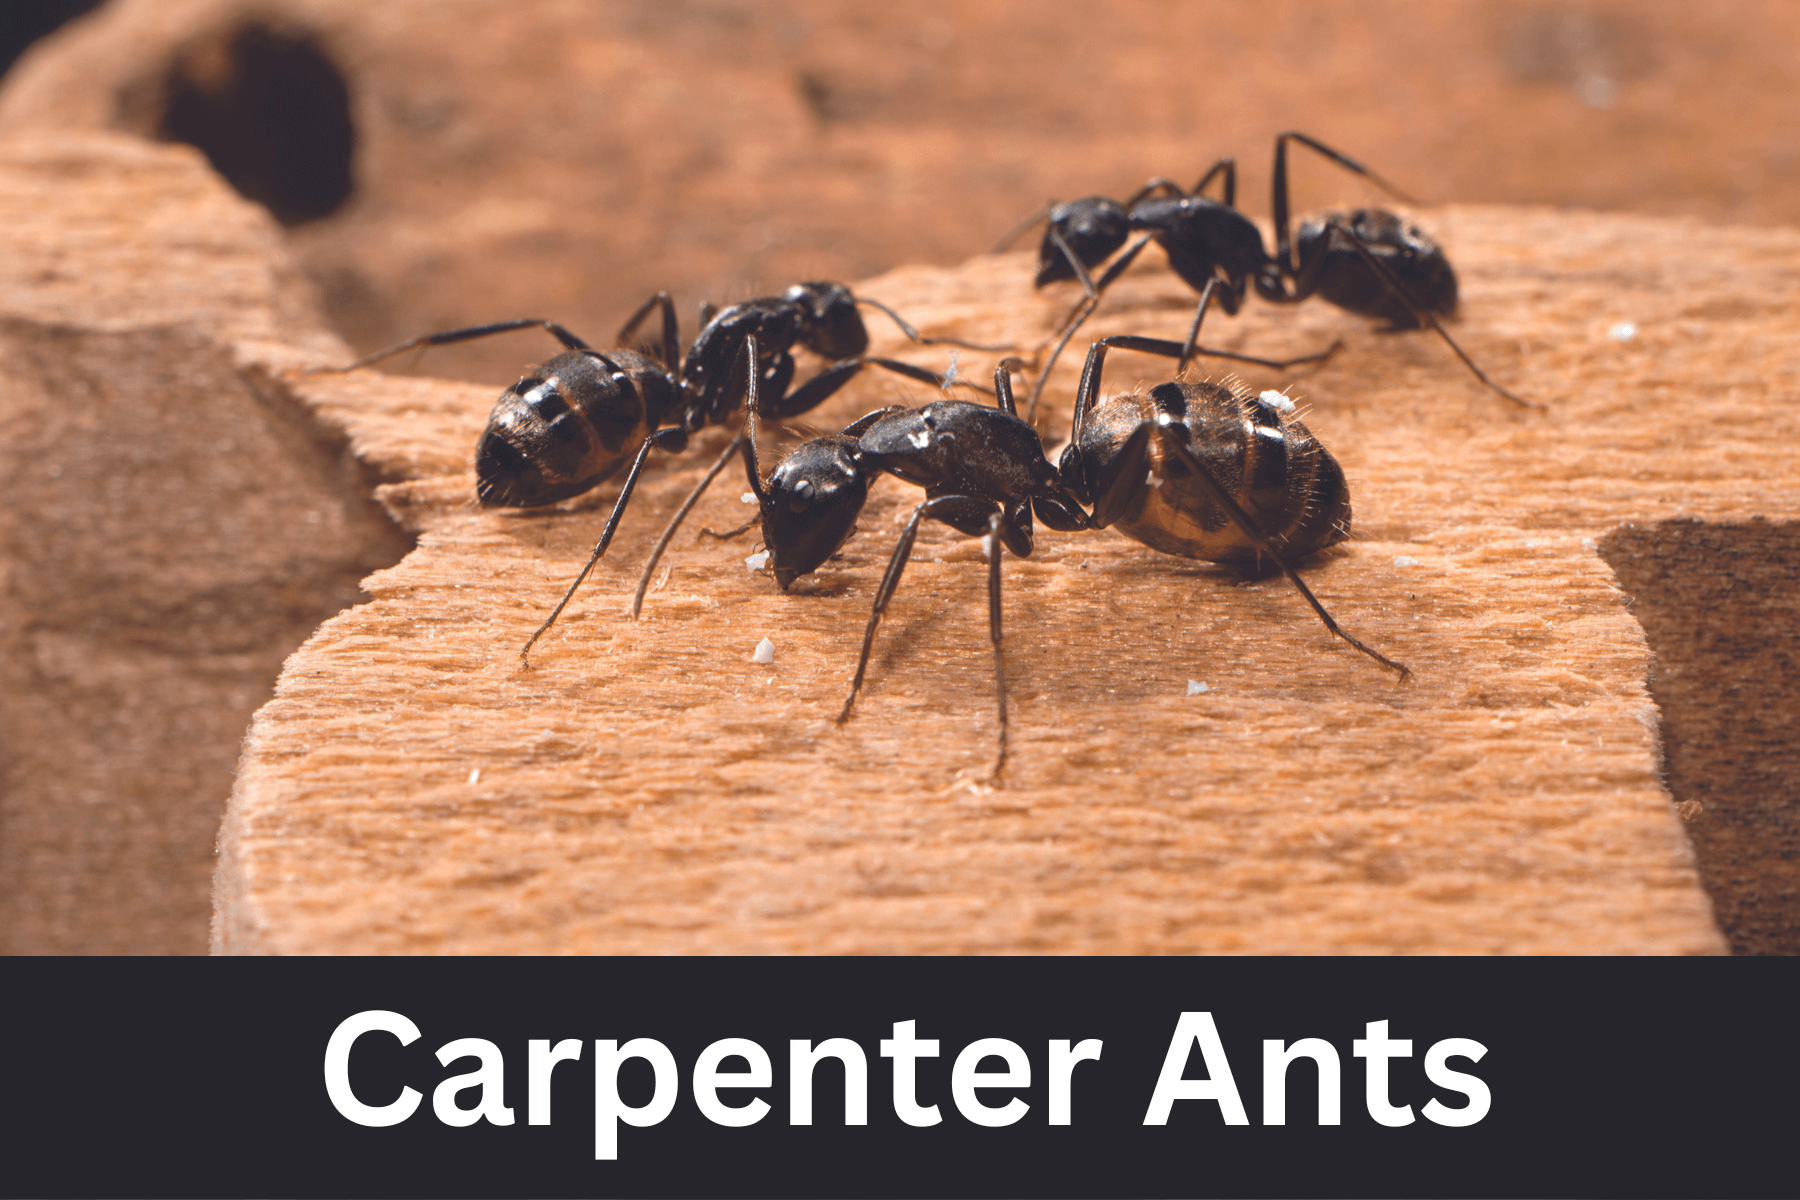 Carpenter ant control